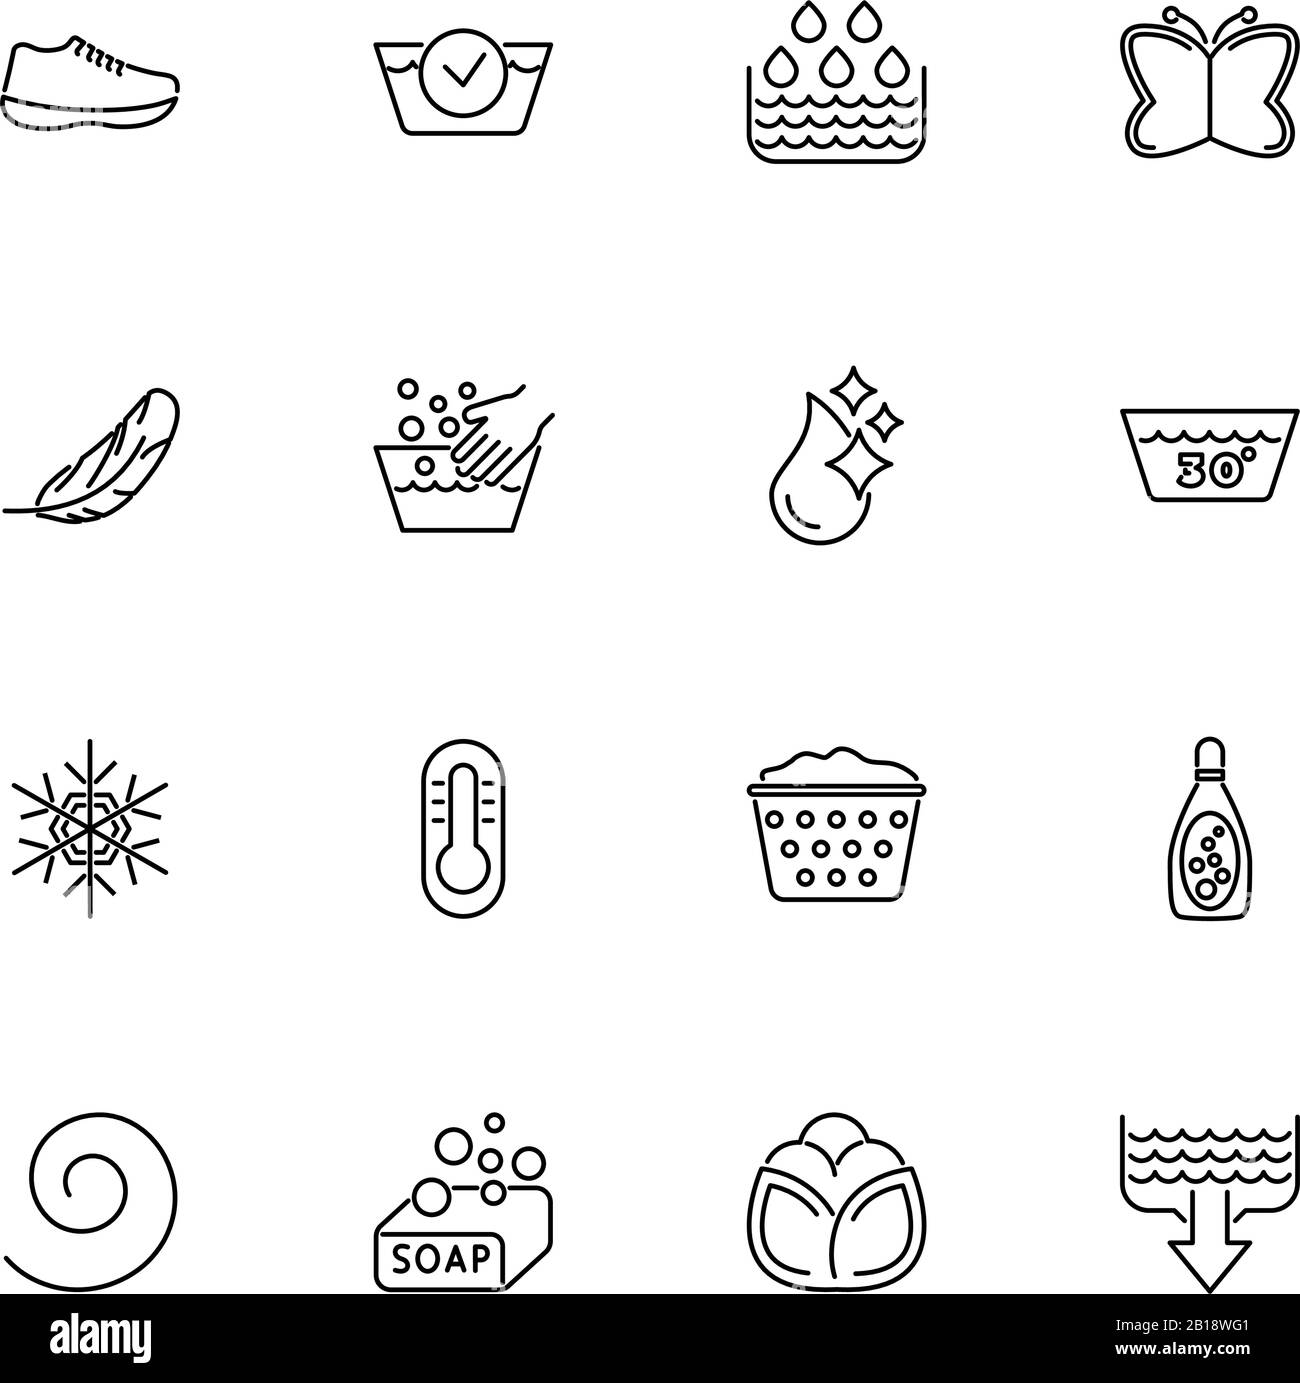 Washing, Laundry, Wash outline icons set - Black symbol on white background. Washing, Laundry, Wash Simple Illustration Symbol - lined simplicity Sign Stock Vector